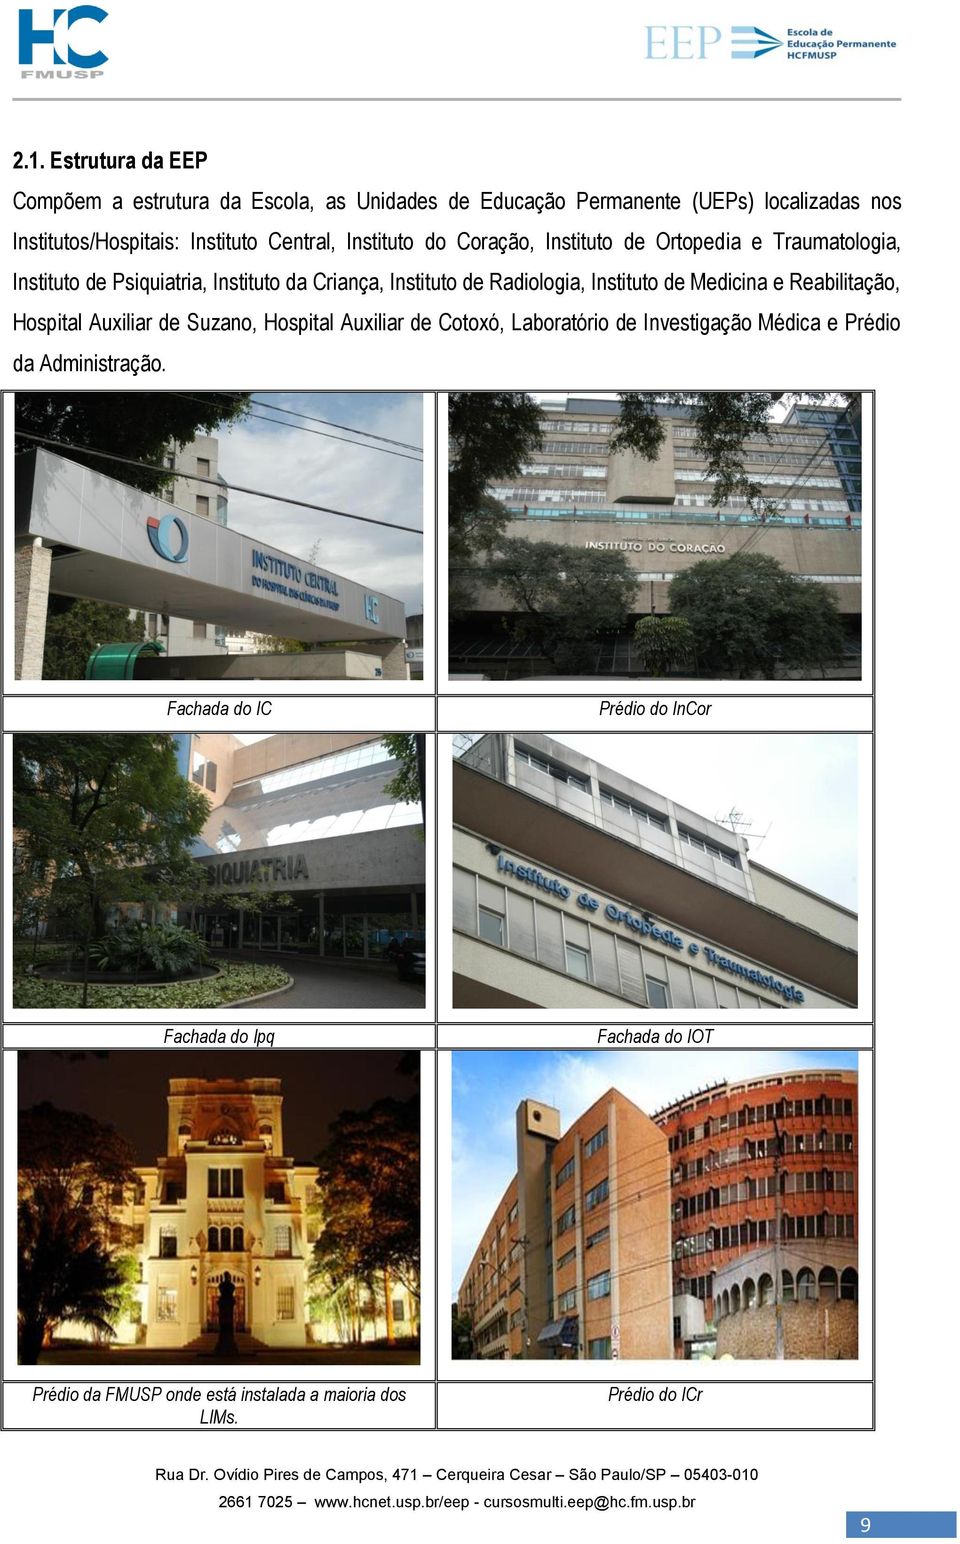 Instituto de Medicina e Reabilitação, Hospital Auxiliar de Suzano, Hospital Auxiliar de Cotoxó, Laboratório de Investigação Médica e Prédio da